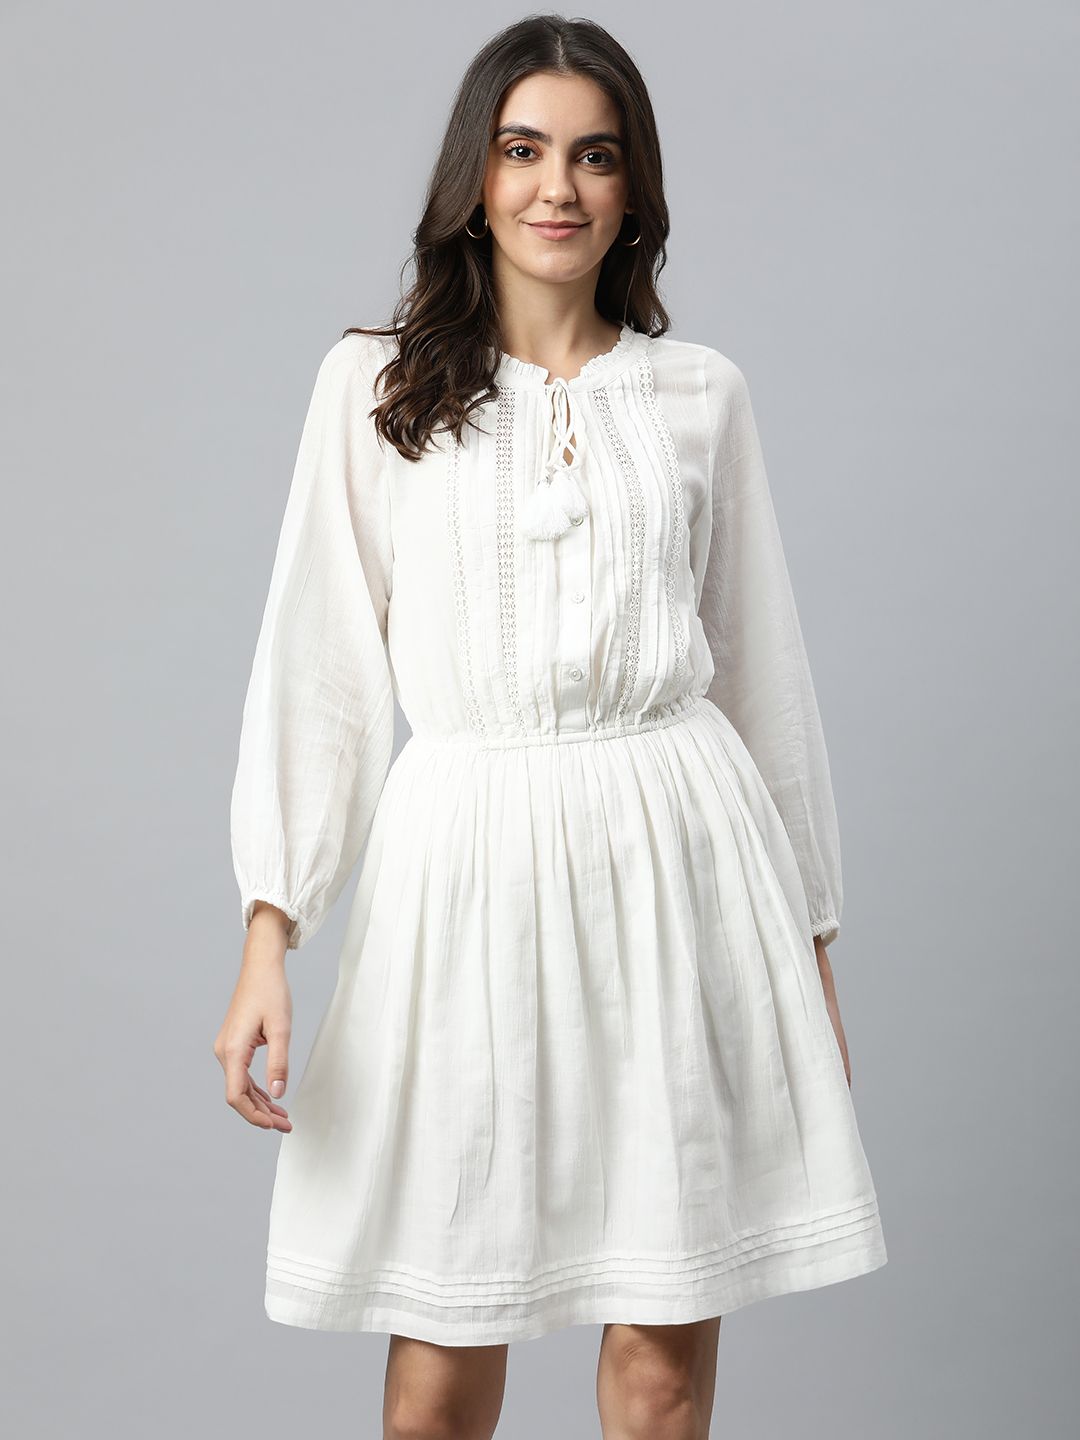 Marks & Spencer White Tie-Up Neck Dress Price in India